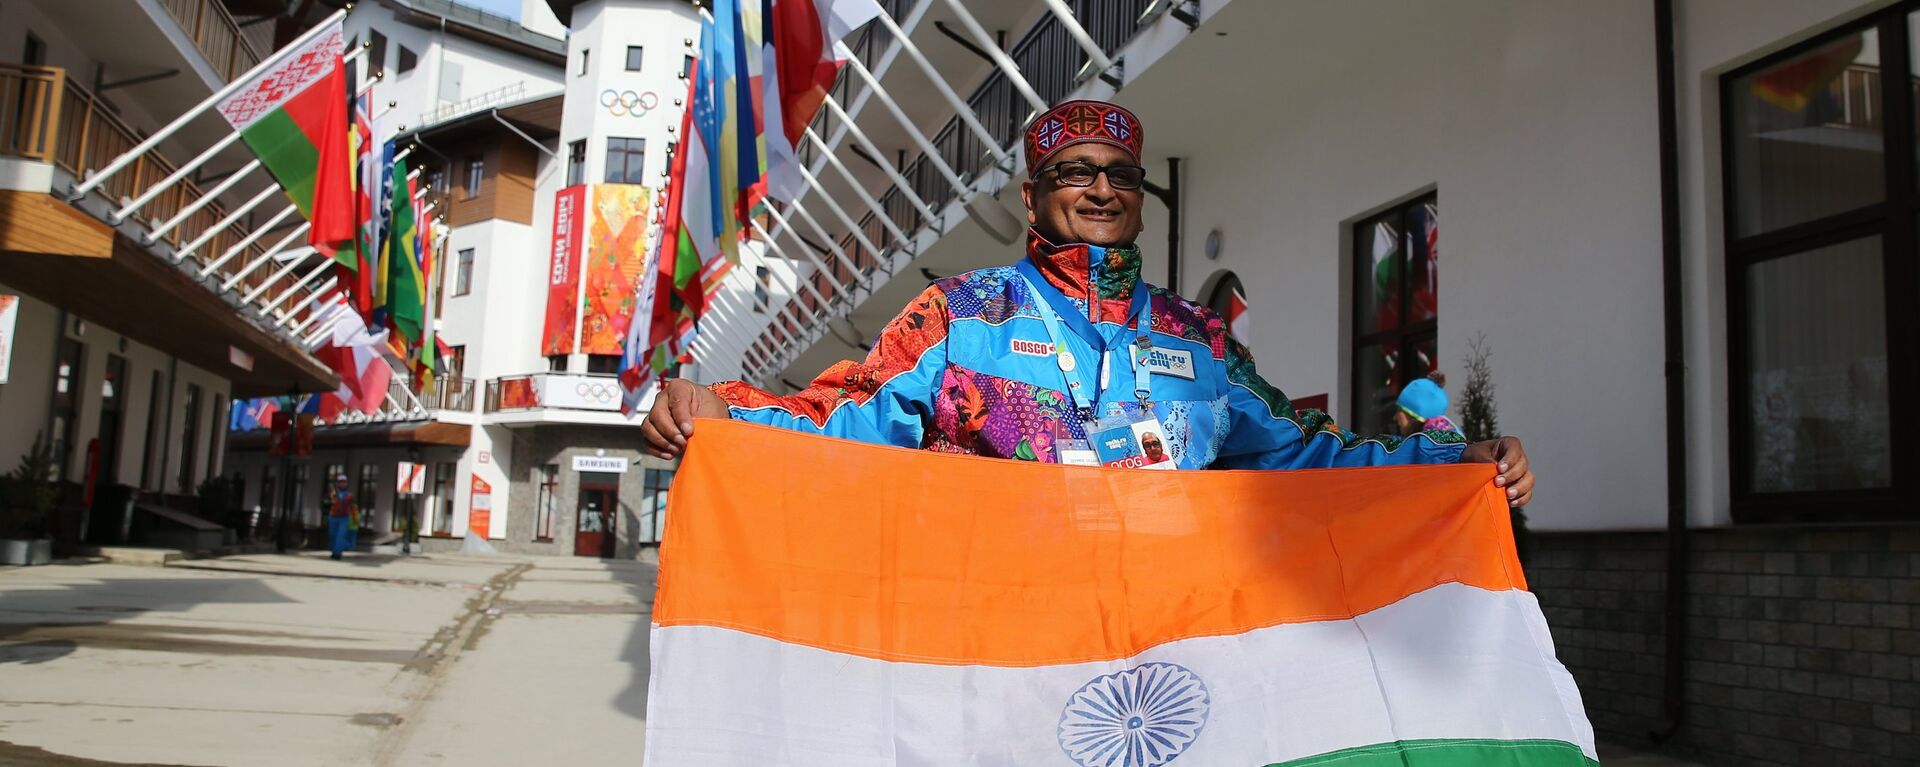 Поднятие флага Индии в Горной Олимпийской деревне - Sputnik Узбекистан, 1920, 03.03.2021